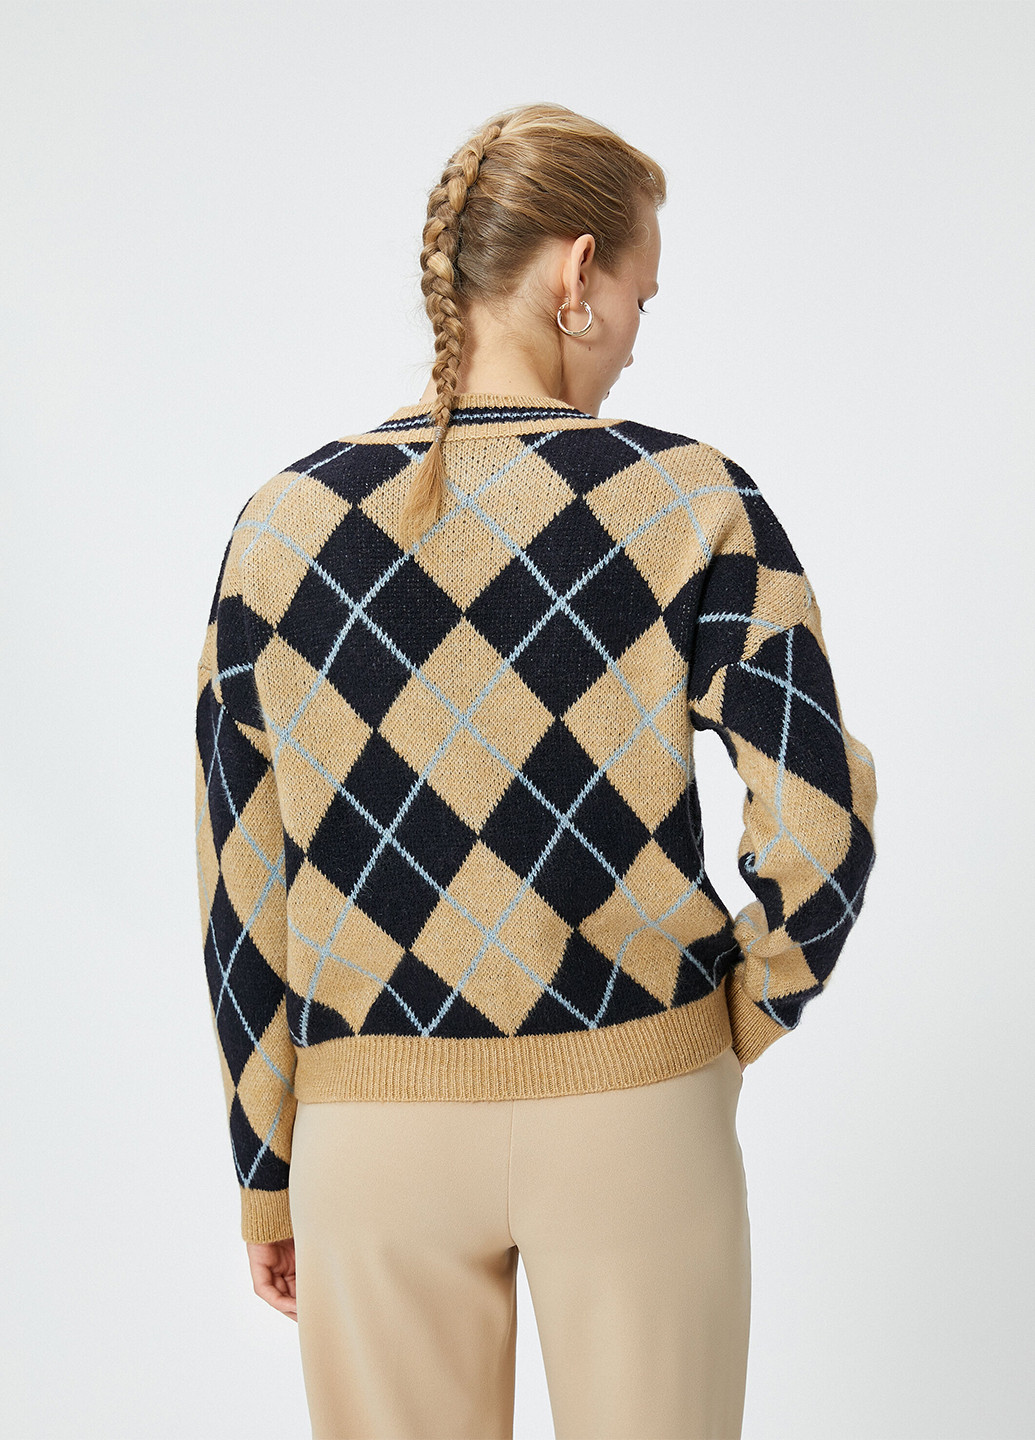 Комбинированный демисезонный пуловер пуловер KOTON